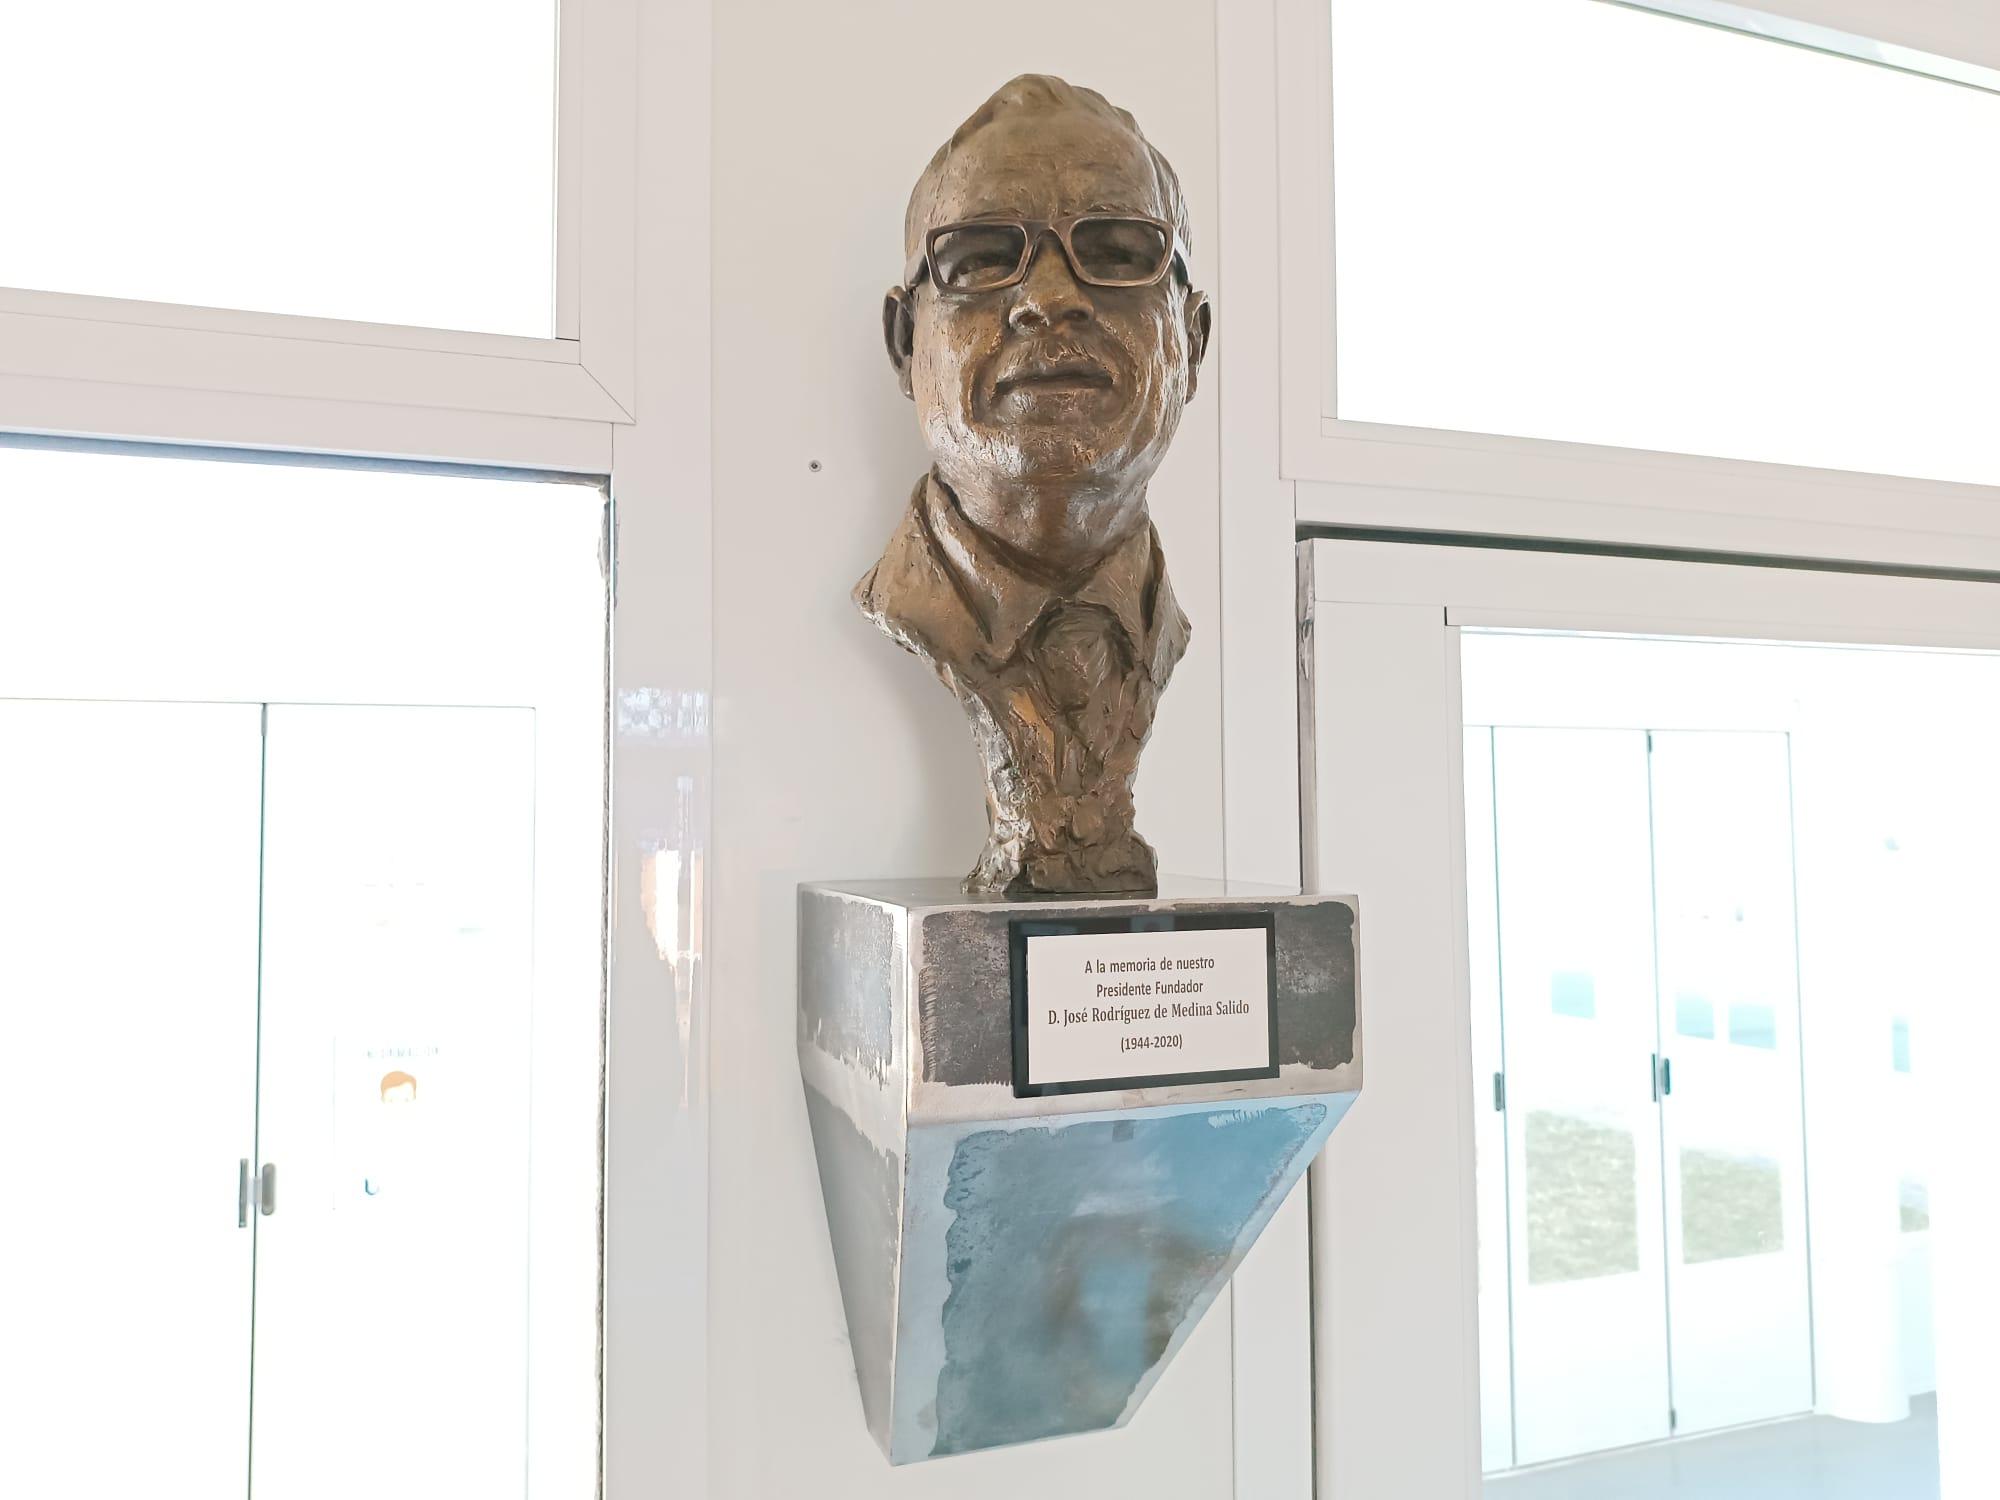 Upacesur reconoce la labor de su presidente fundador inaugurando un busto en su honor